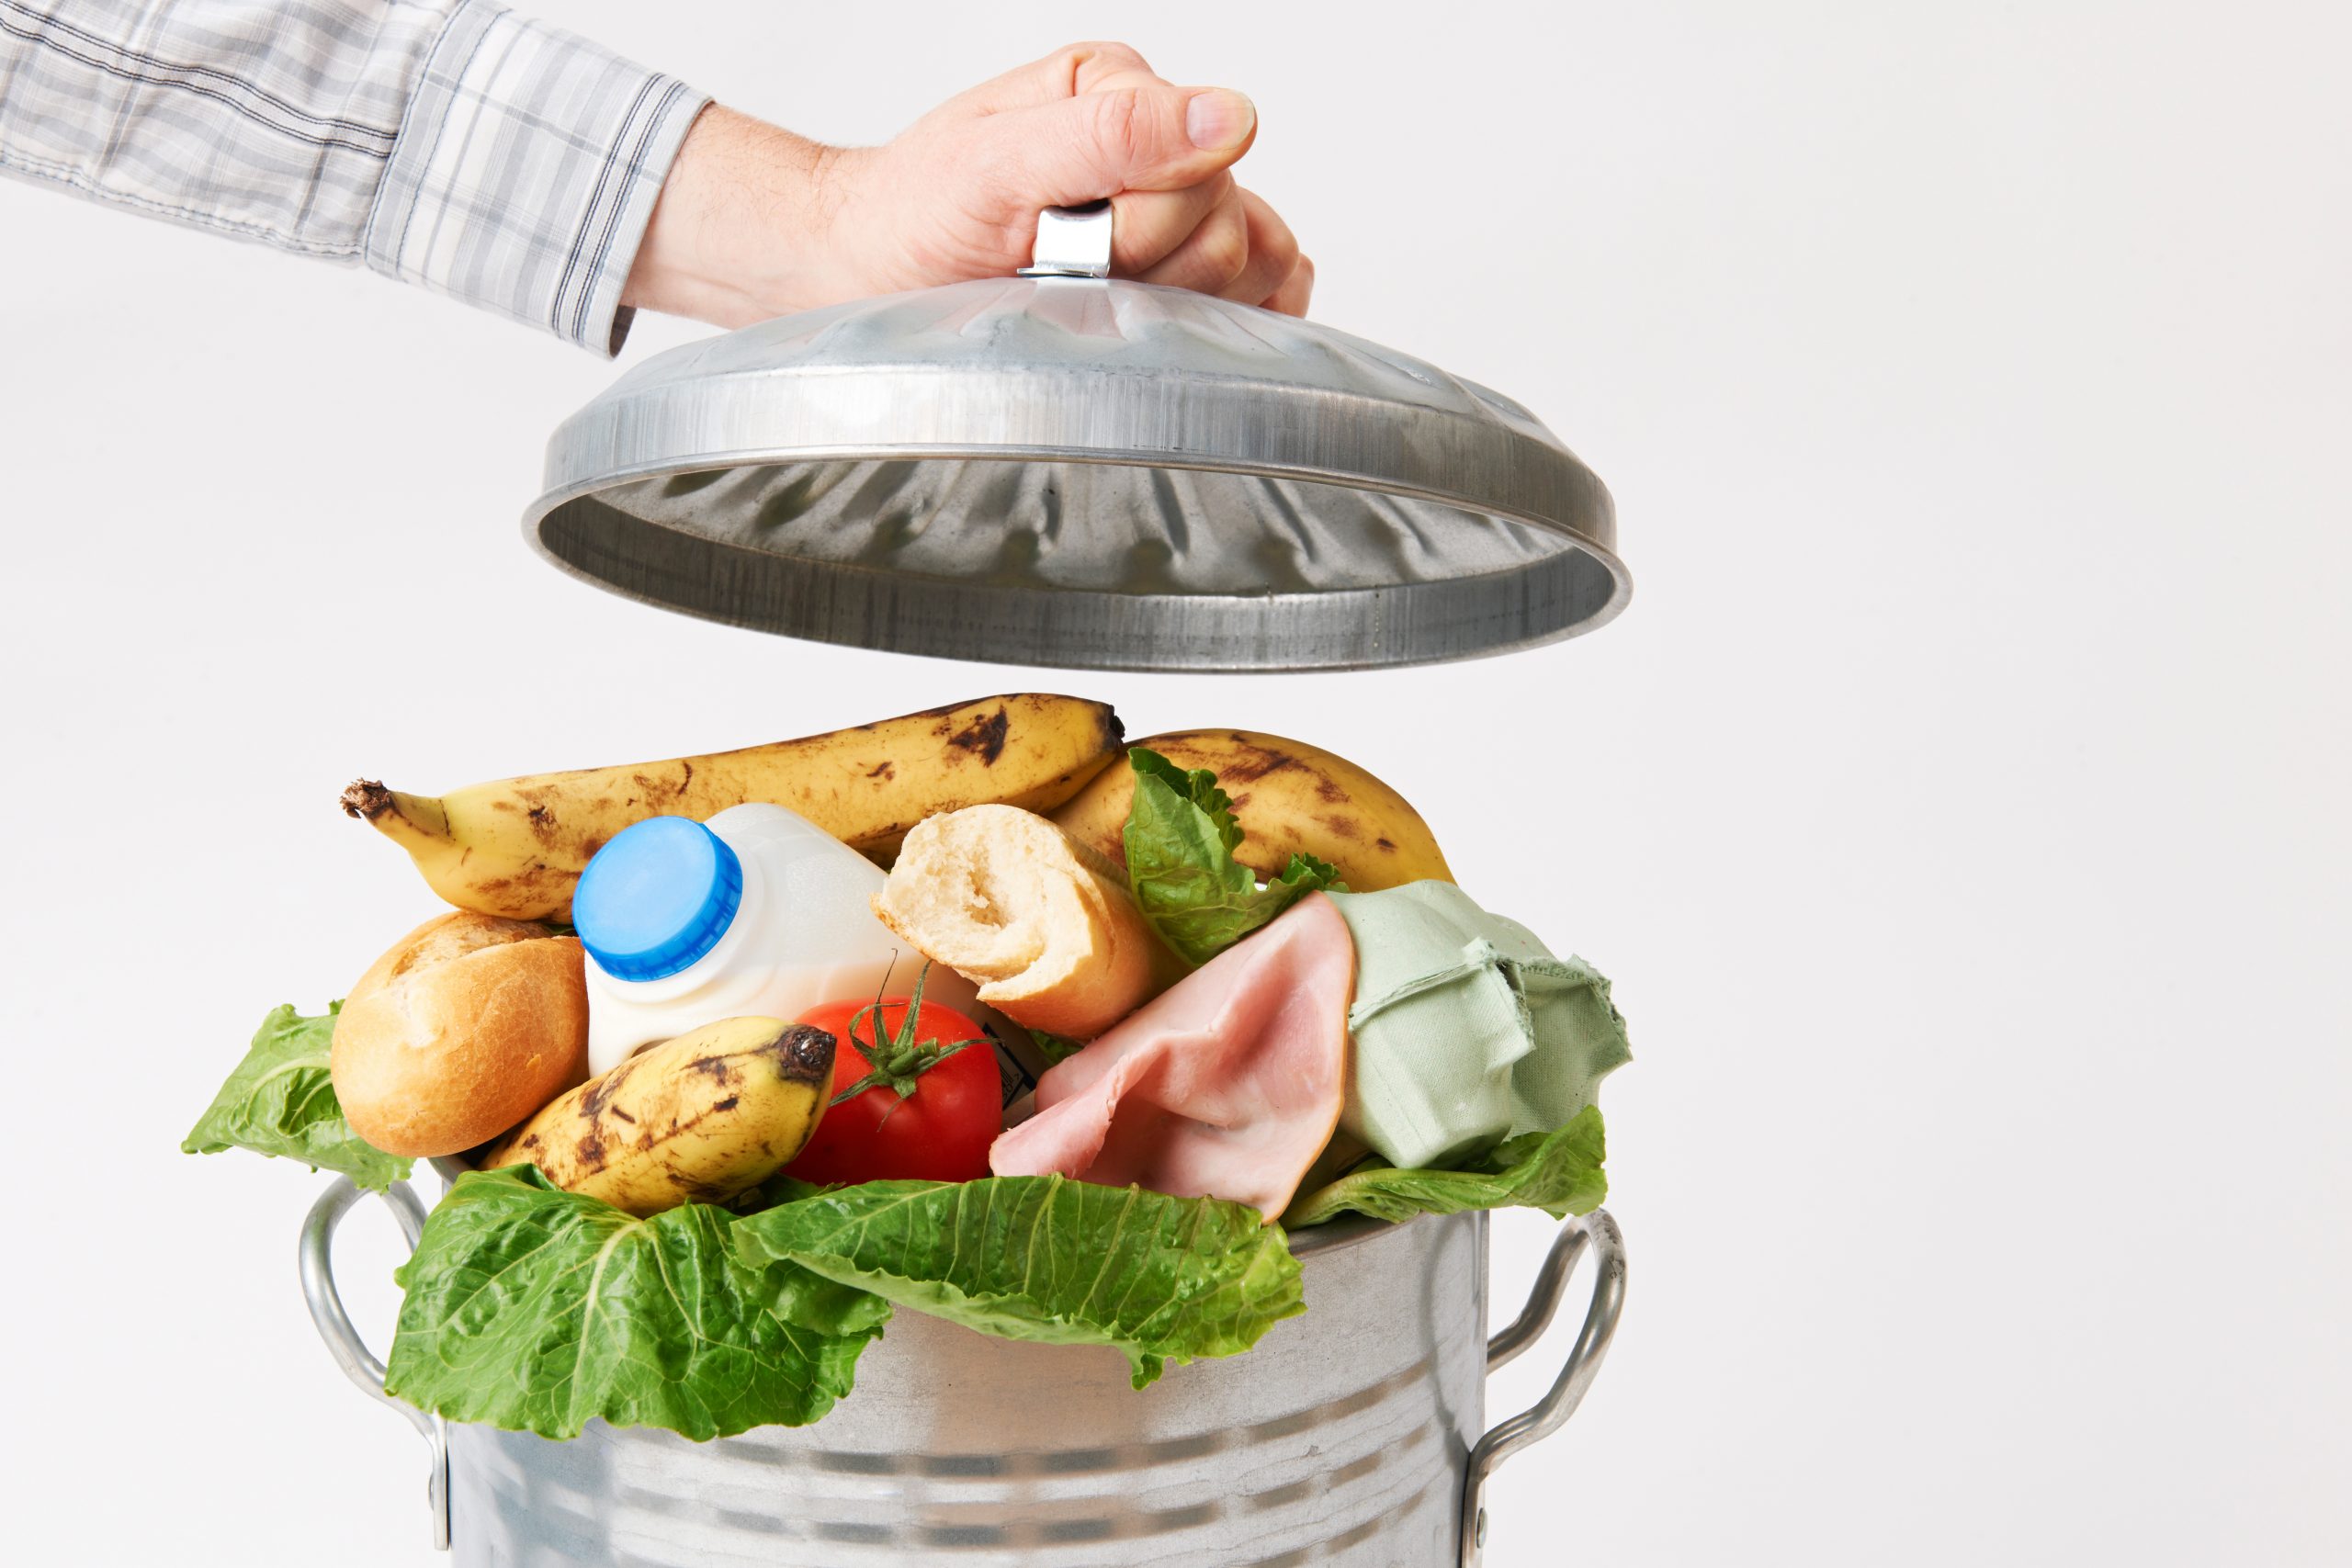 Schimmel auf Nahrungsmitteln: Diese Lebensmittel gehören in den Müll